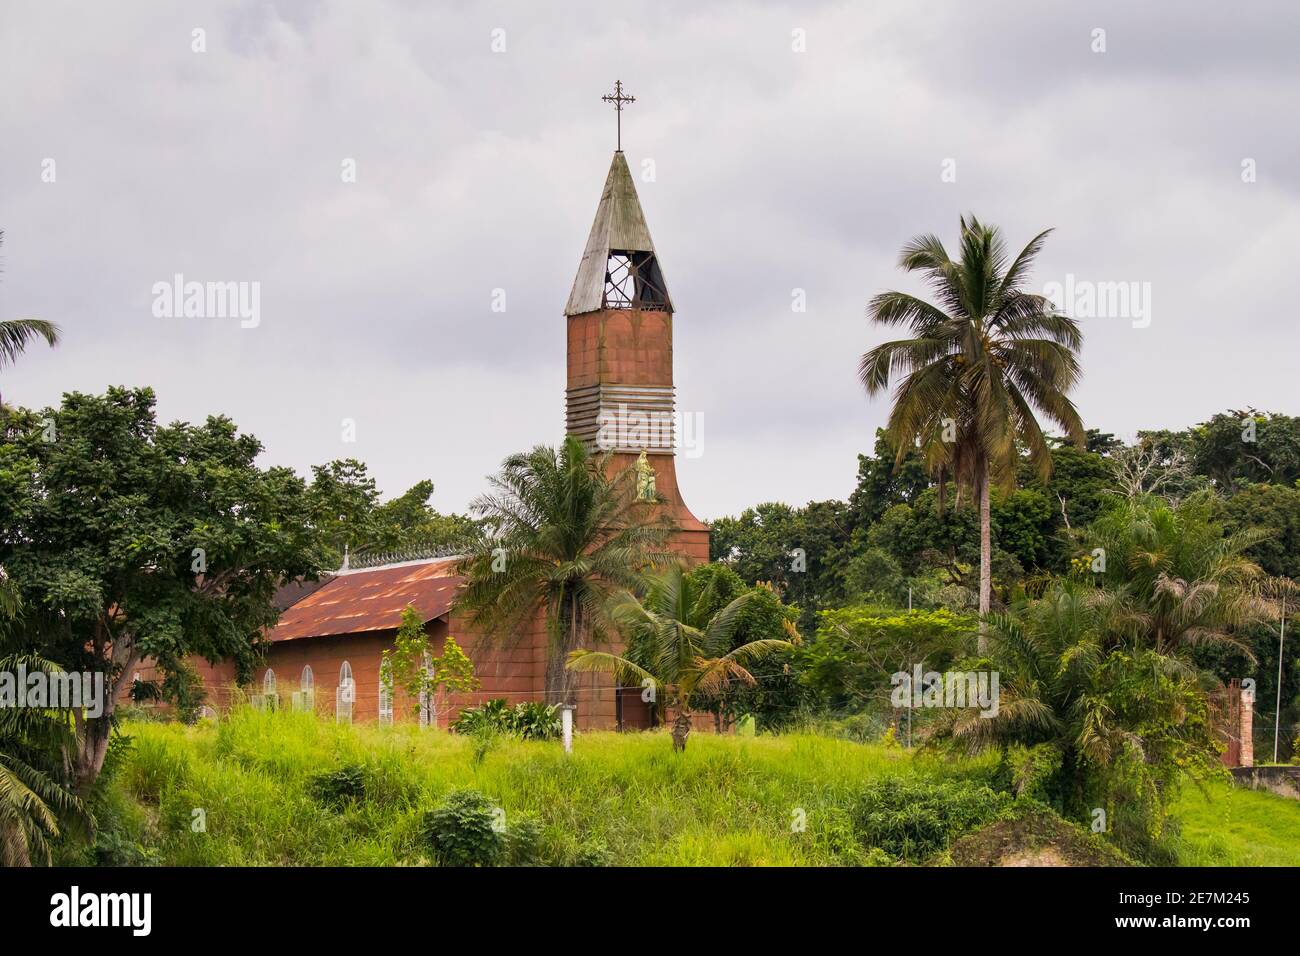 La mission de Sainte-Anne, conçue et fournie par Gustav Eiffel en 1889, près d'Omboue, la lagune de Fernan Vaz, Gabon, Afrique centrale. Banque D'Images